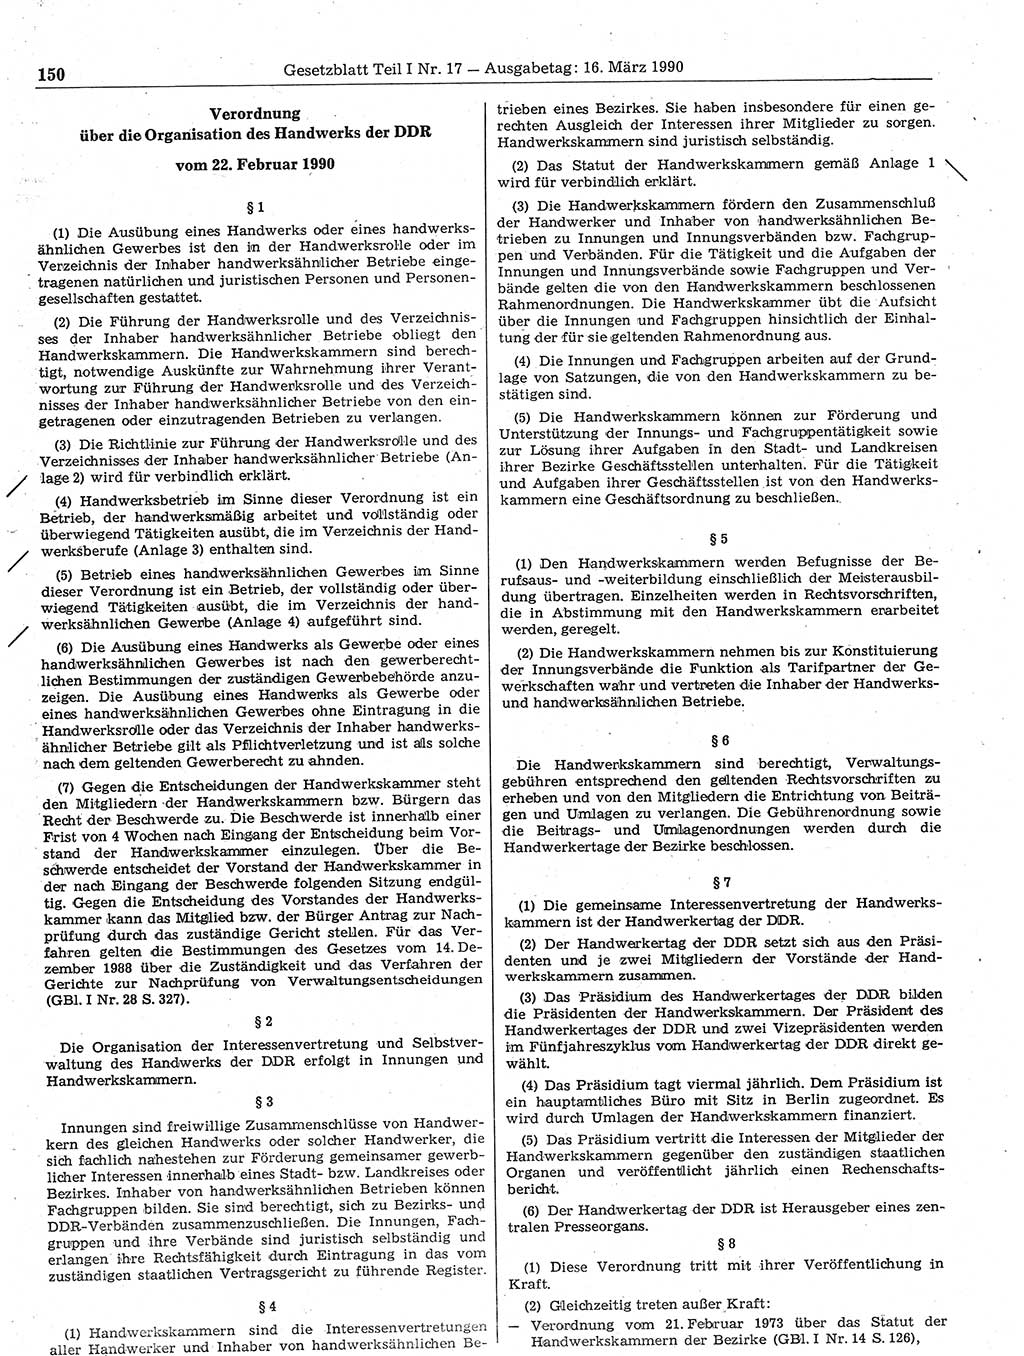 Gesetzblatt (GBl.) der Deutschen Demokratischen Republik (DDR) Teil Ⅰ 1990, Seite 150 (GBl. DDR Ⅰ 1990, S. 150)